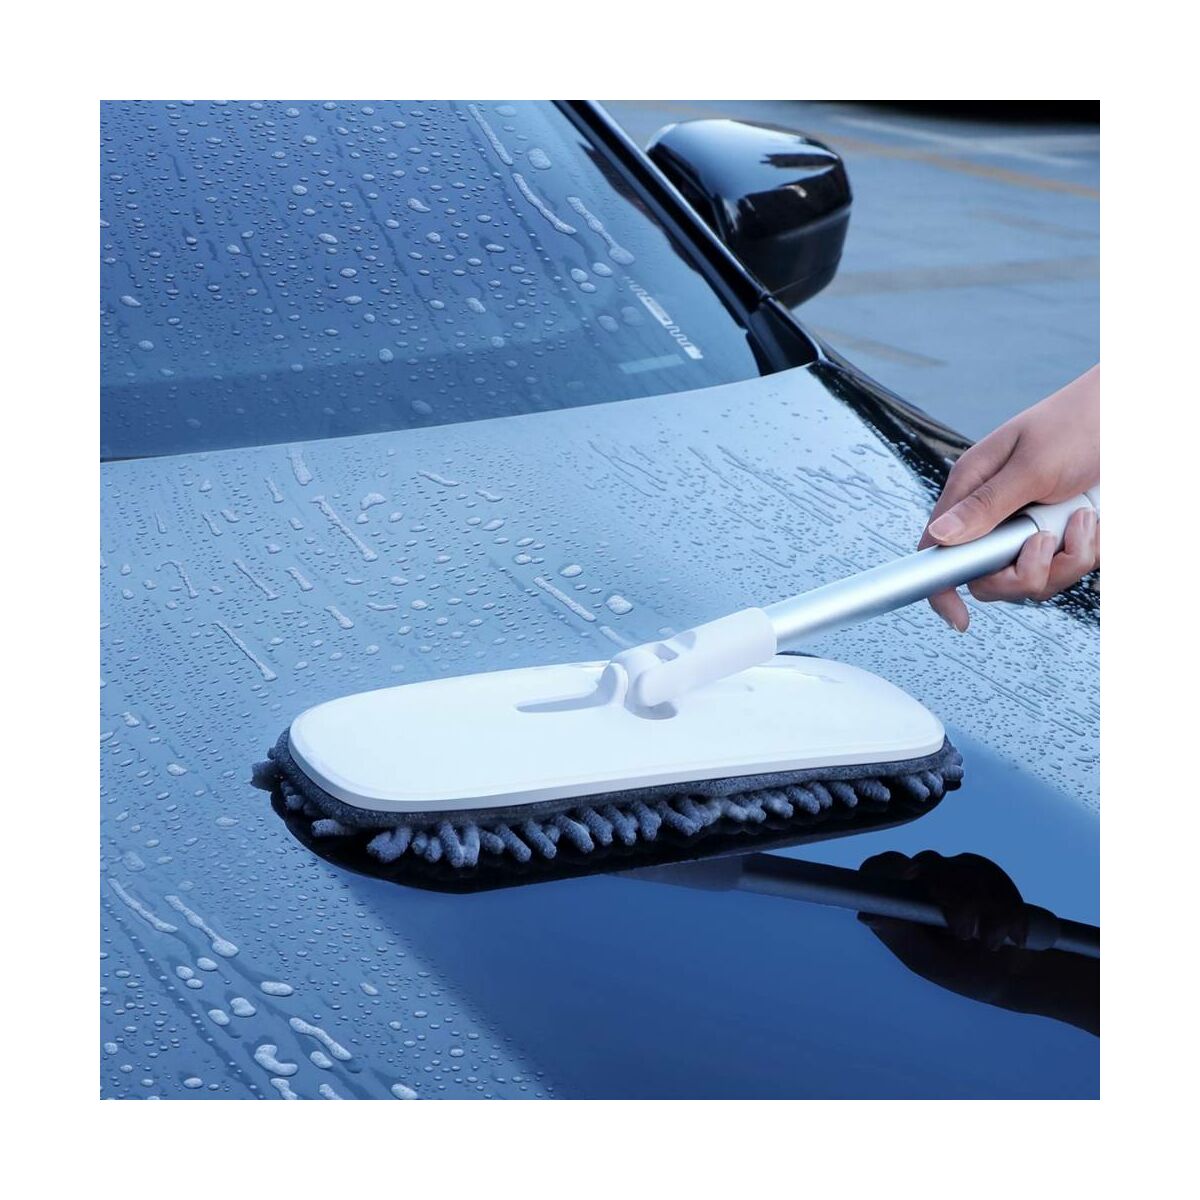 Kép 14/16 - Baseus autós kiegészítő, Handy Car Home mosó/tisztító nyélhez cserélhető ruha fej (2db / csomag) 100% poliészter chenille, szürke (CRTB-A0G)